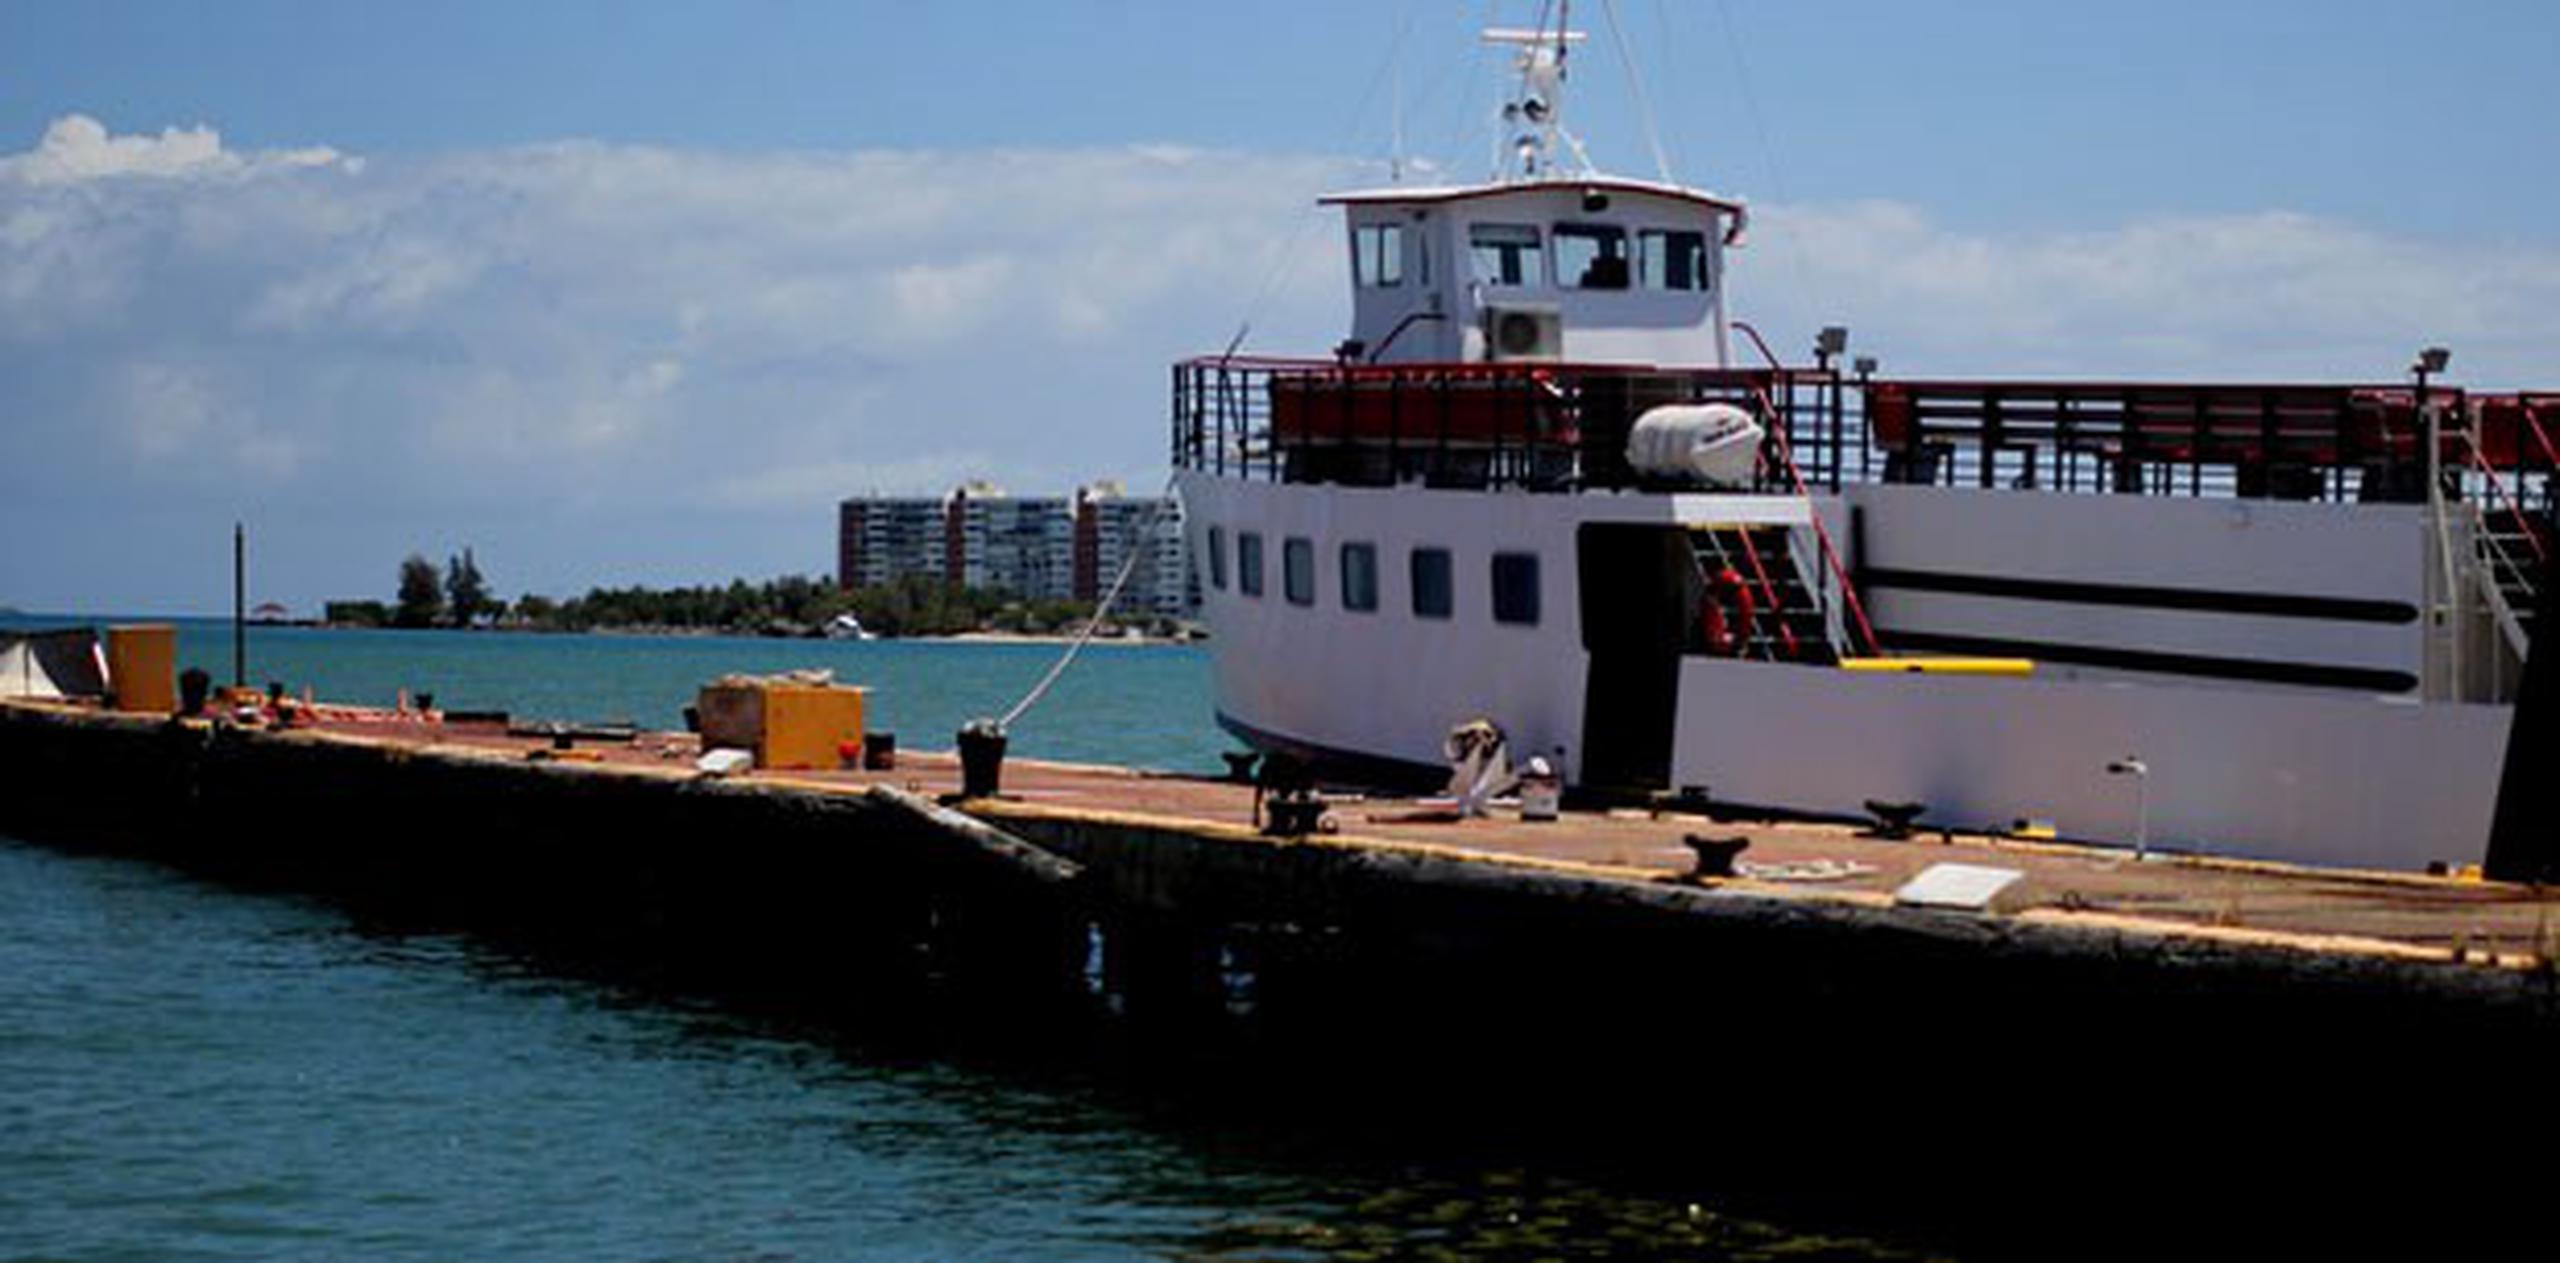 El alcalde de Vieques dijo que “todos estamos en el mismo bote” porque dependen de las mismas embarcaciones. (Archivo)